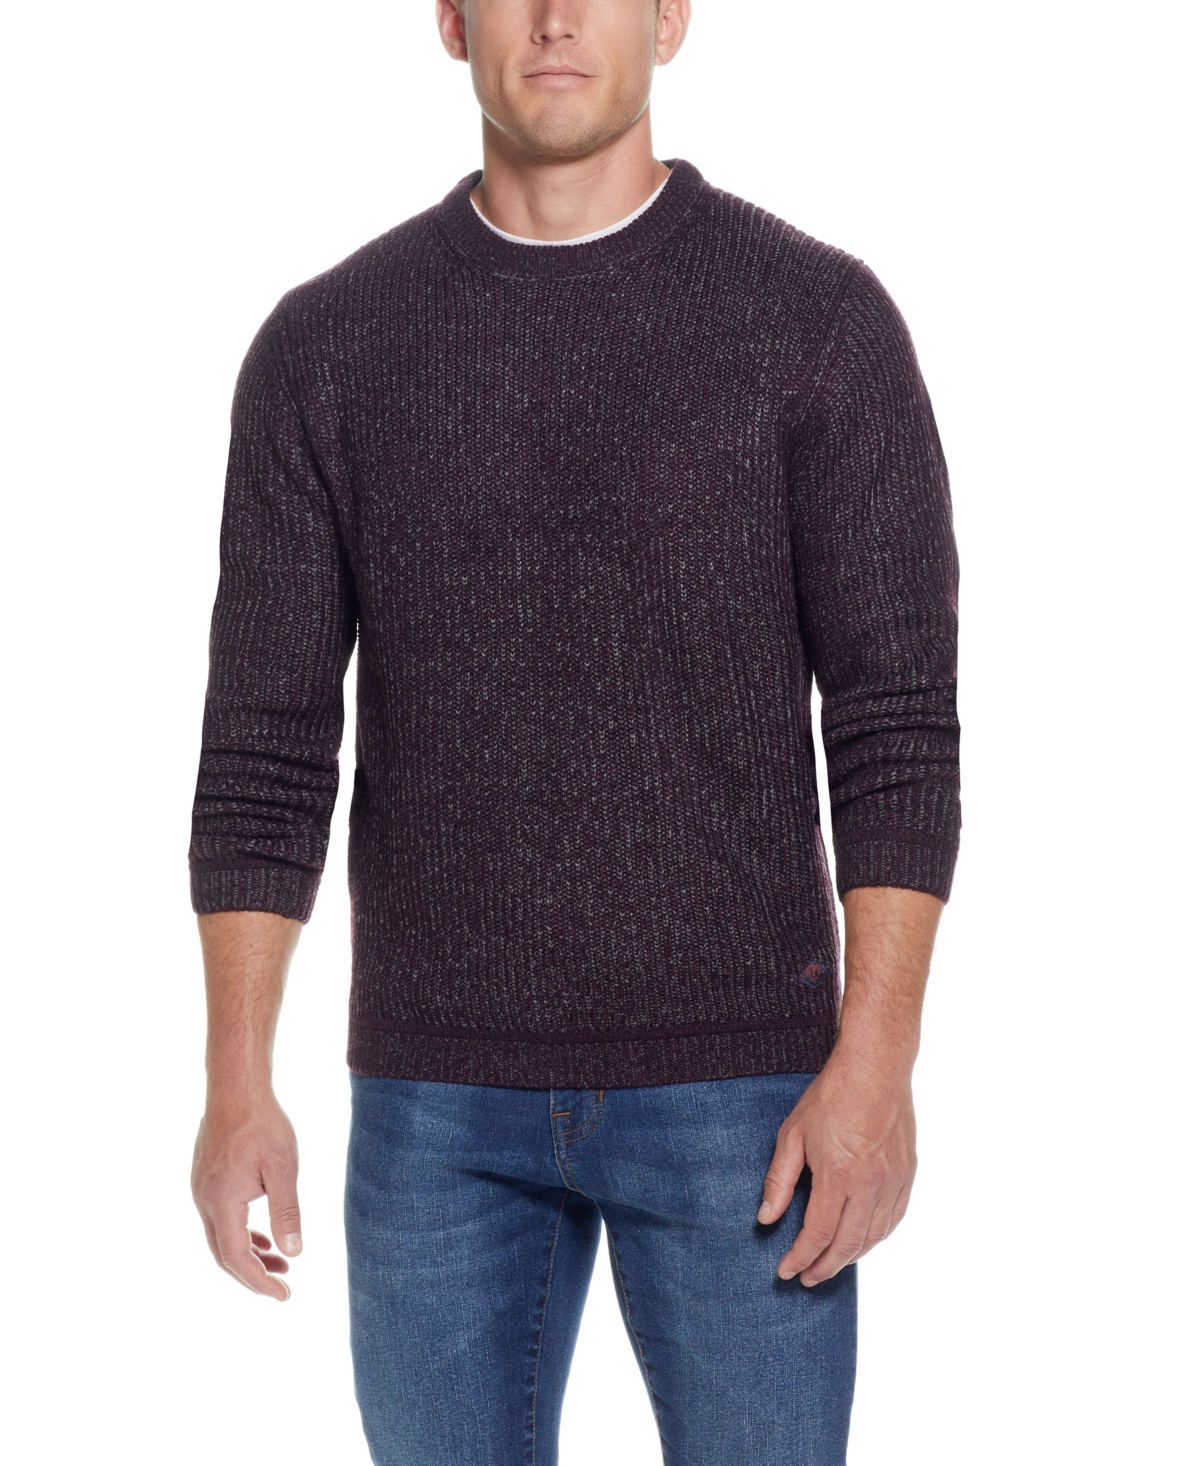 Men's Crew Neck Sweater - Deep Burgundy